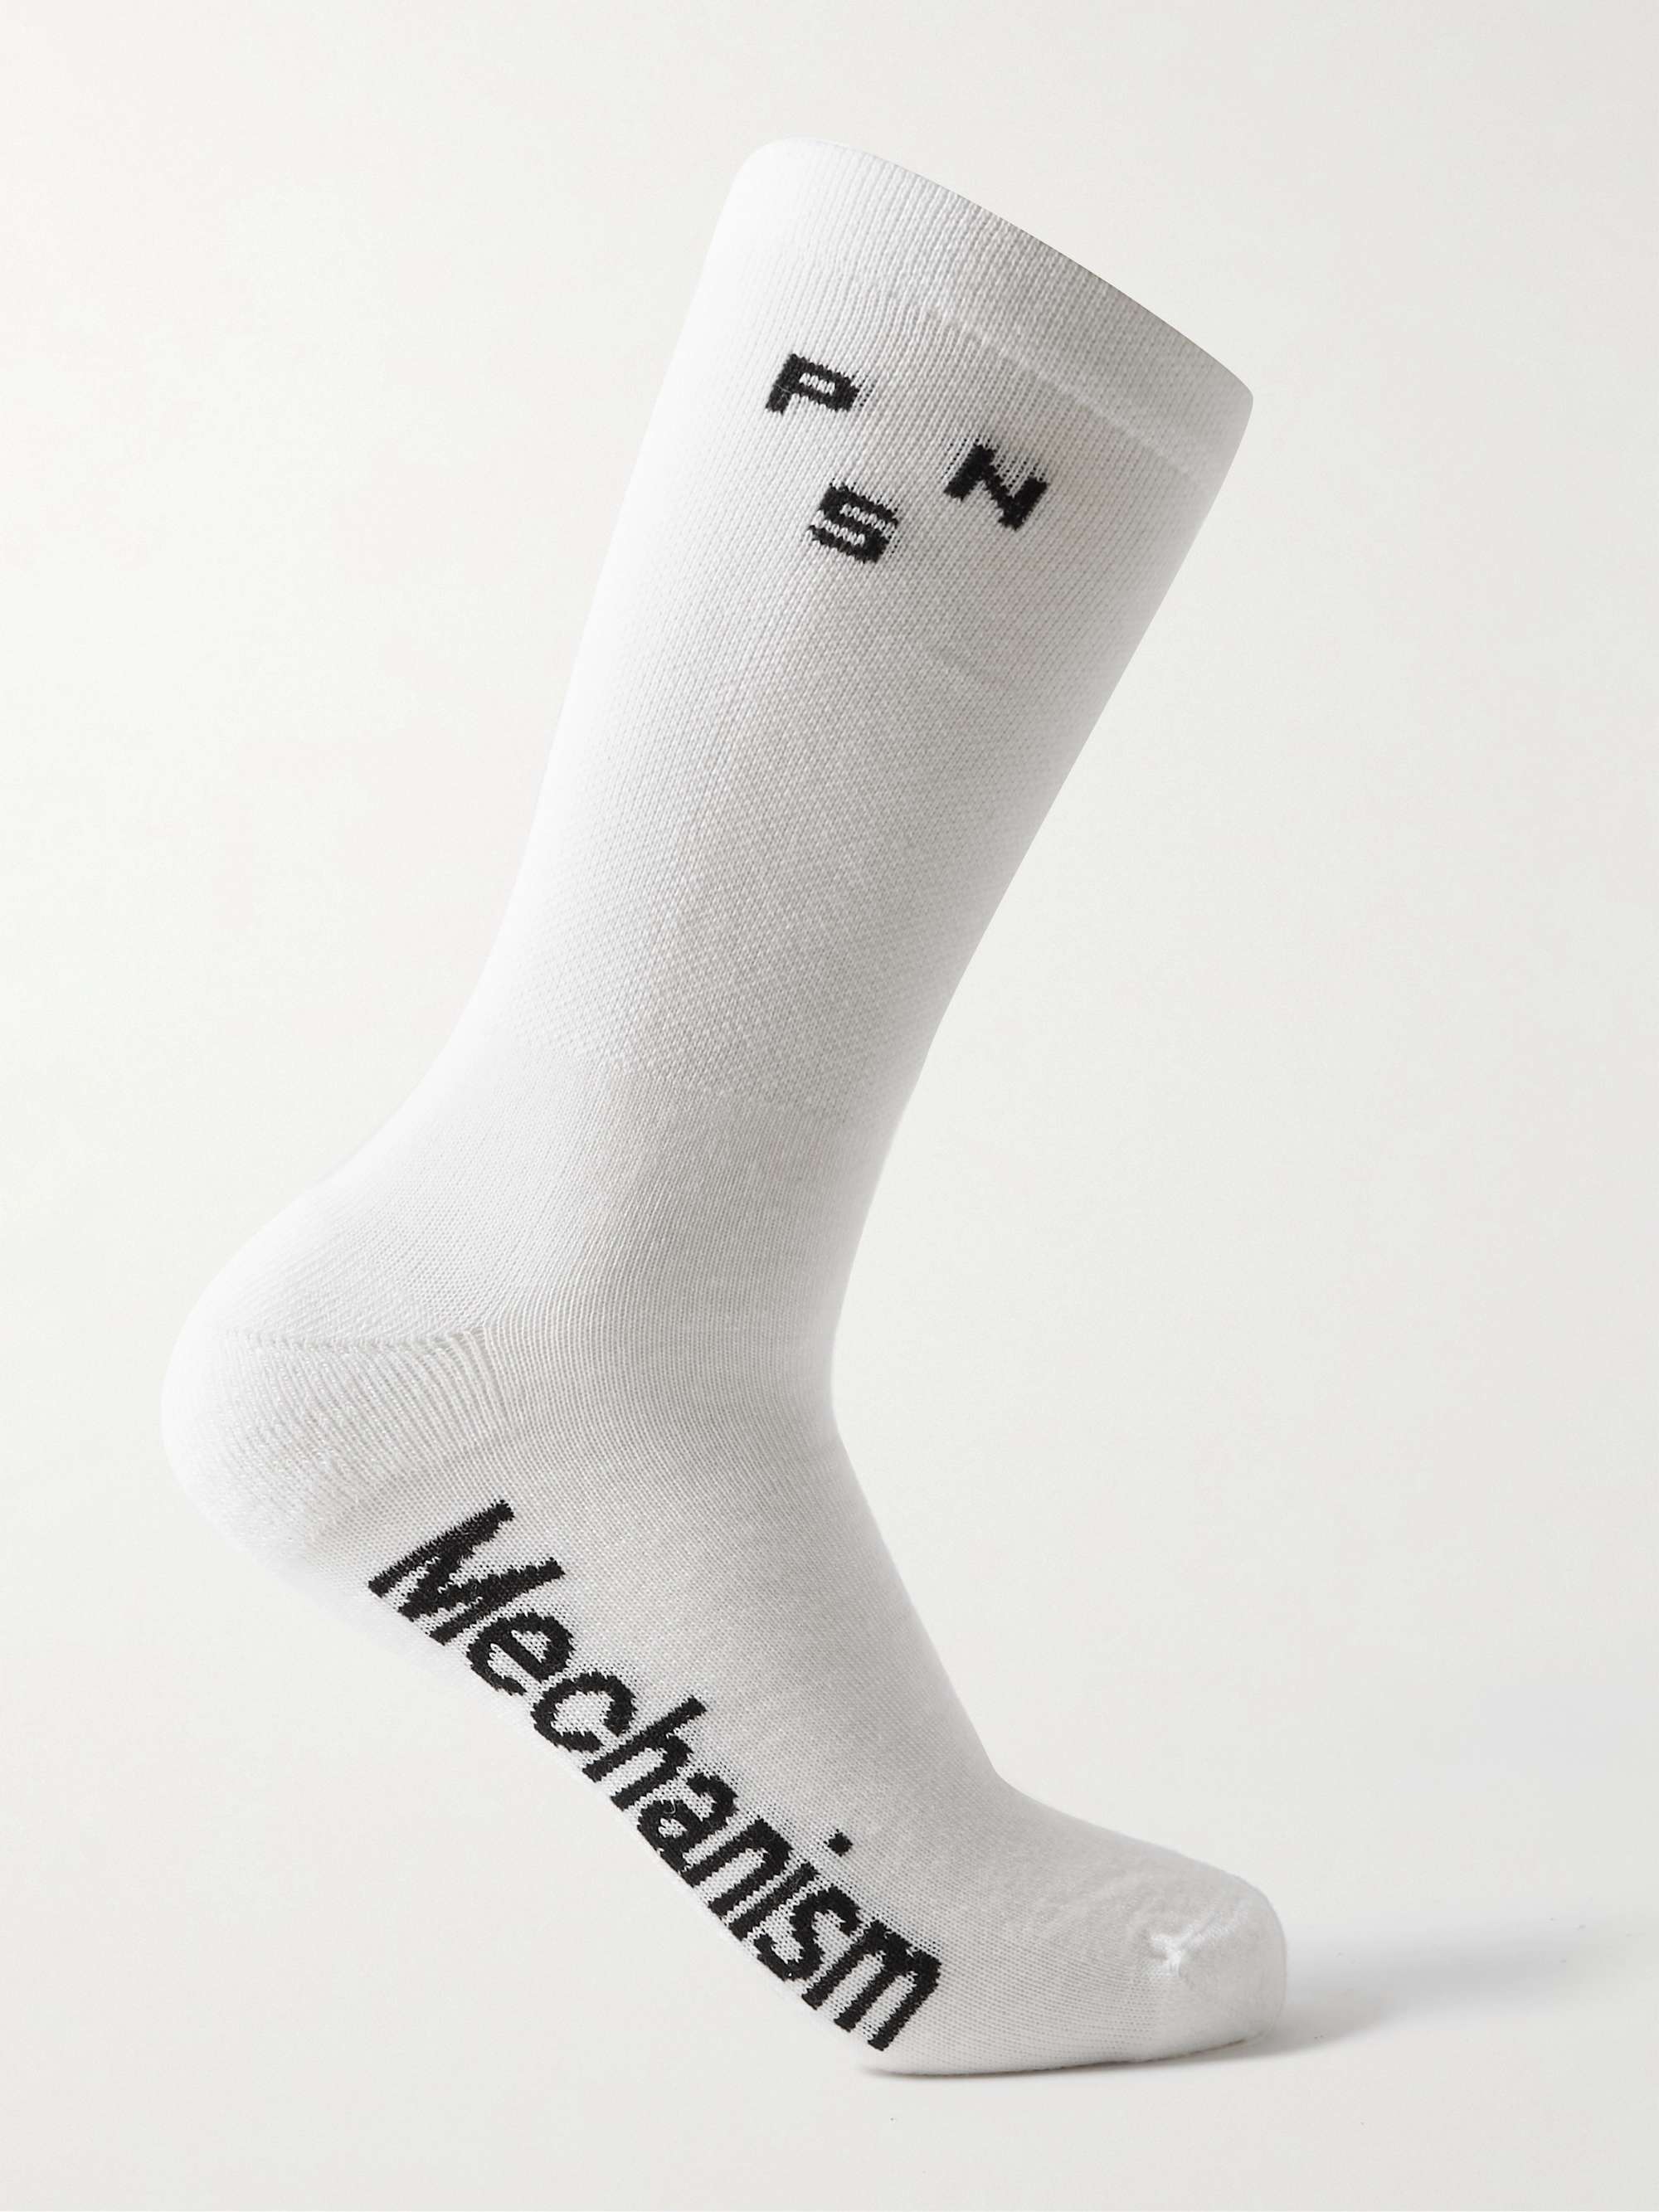 PAS NORMAL STUDIOS Mechanism Thermal Merino Wool-Blend Cycling Socks